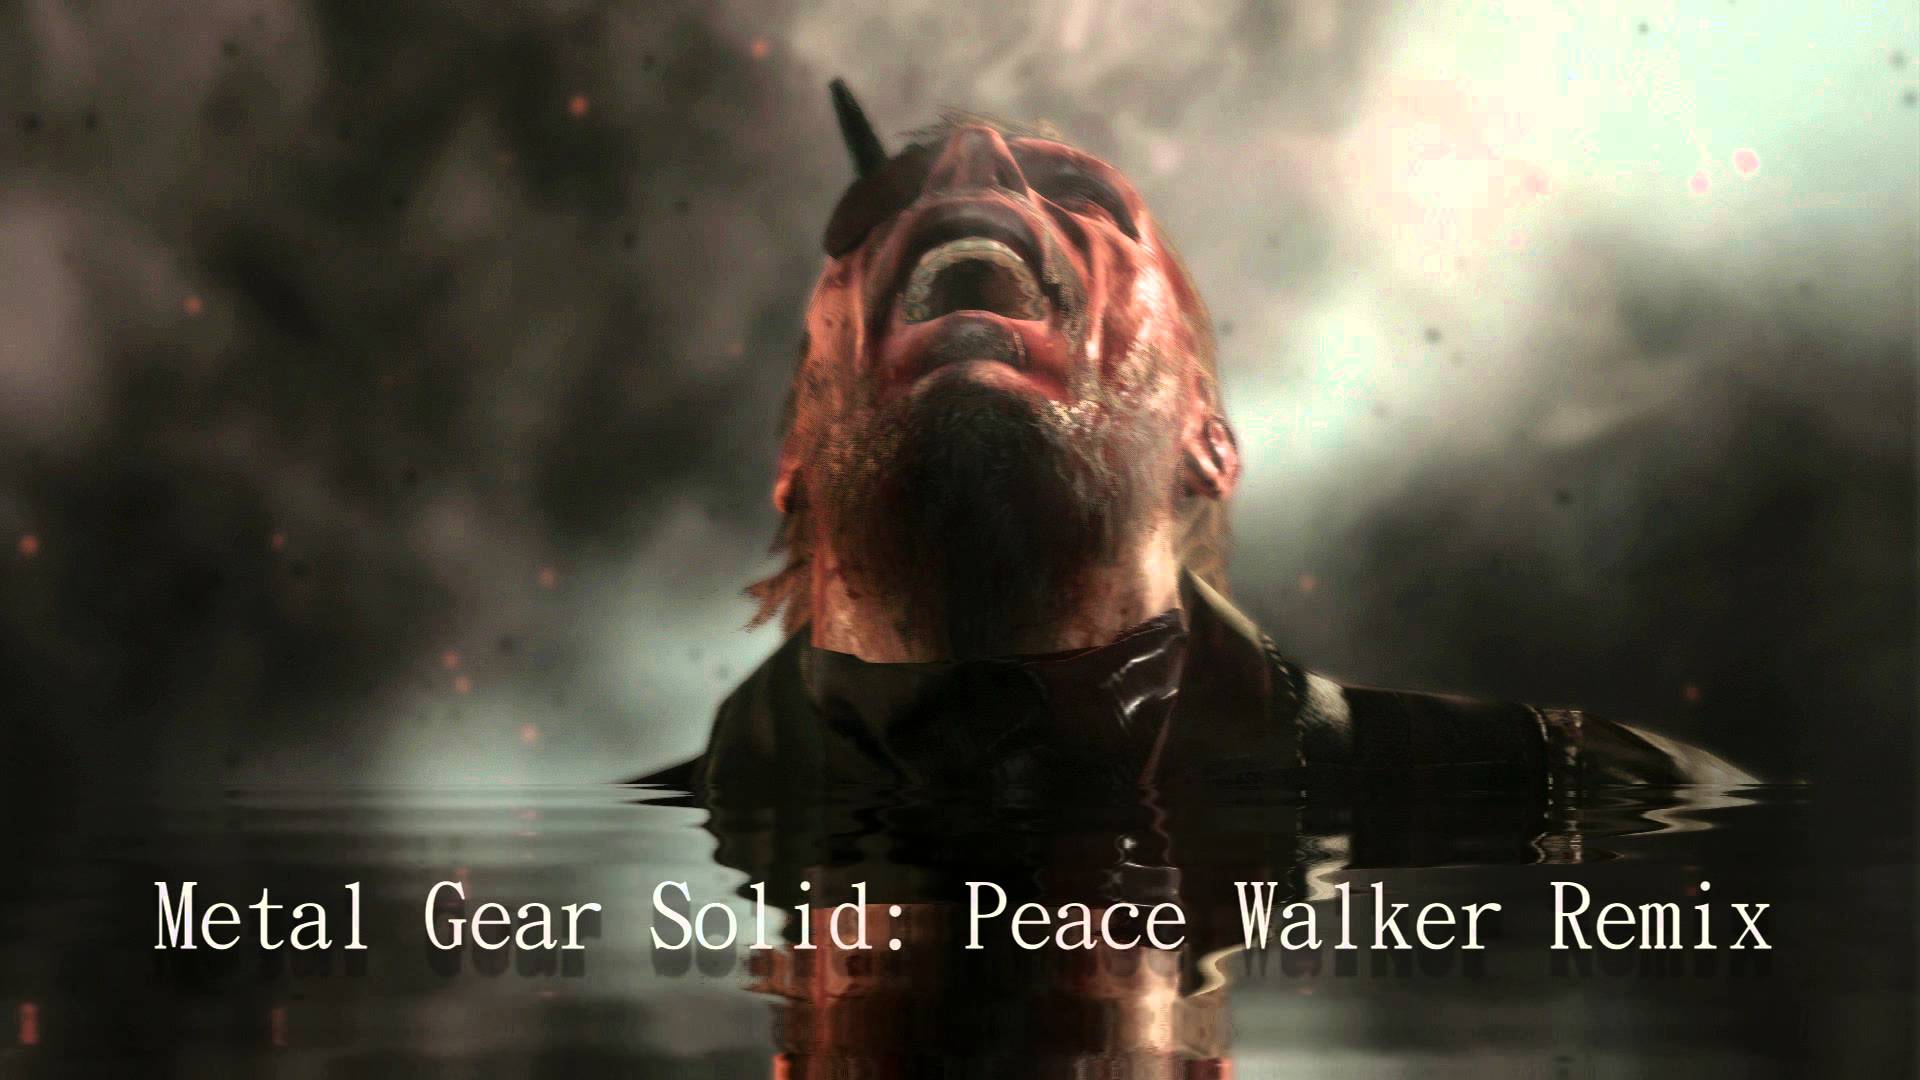 Metal Gear Solid: Peace Walker Remix - YouTube